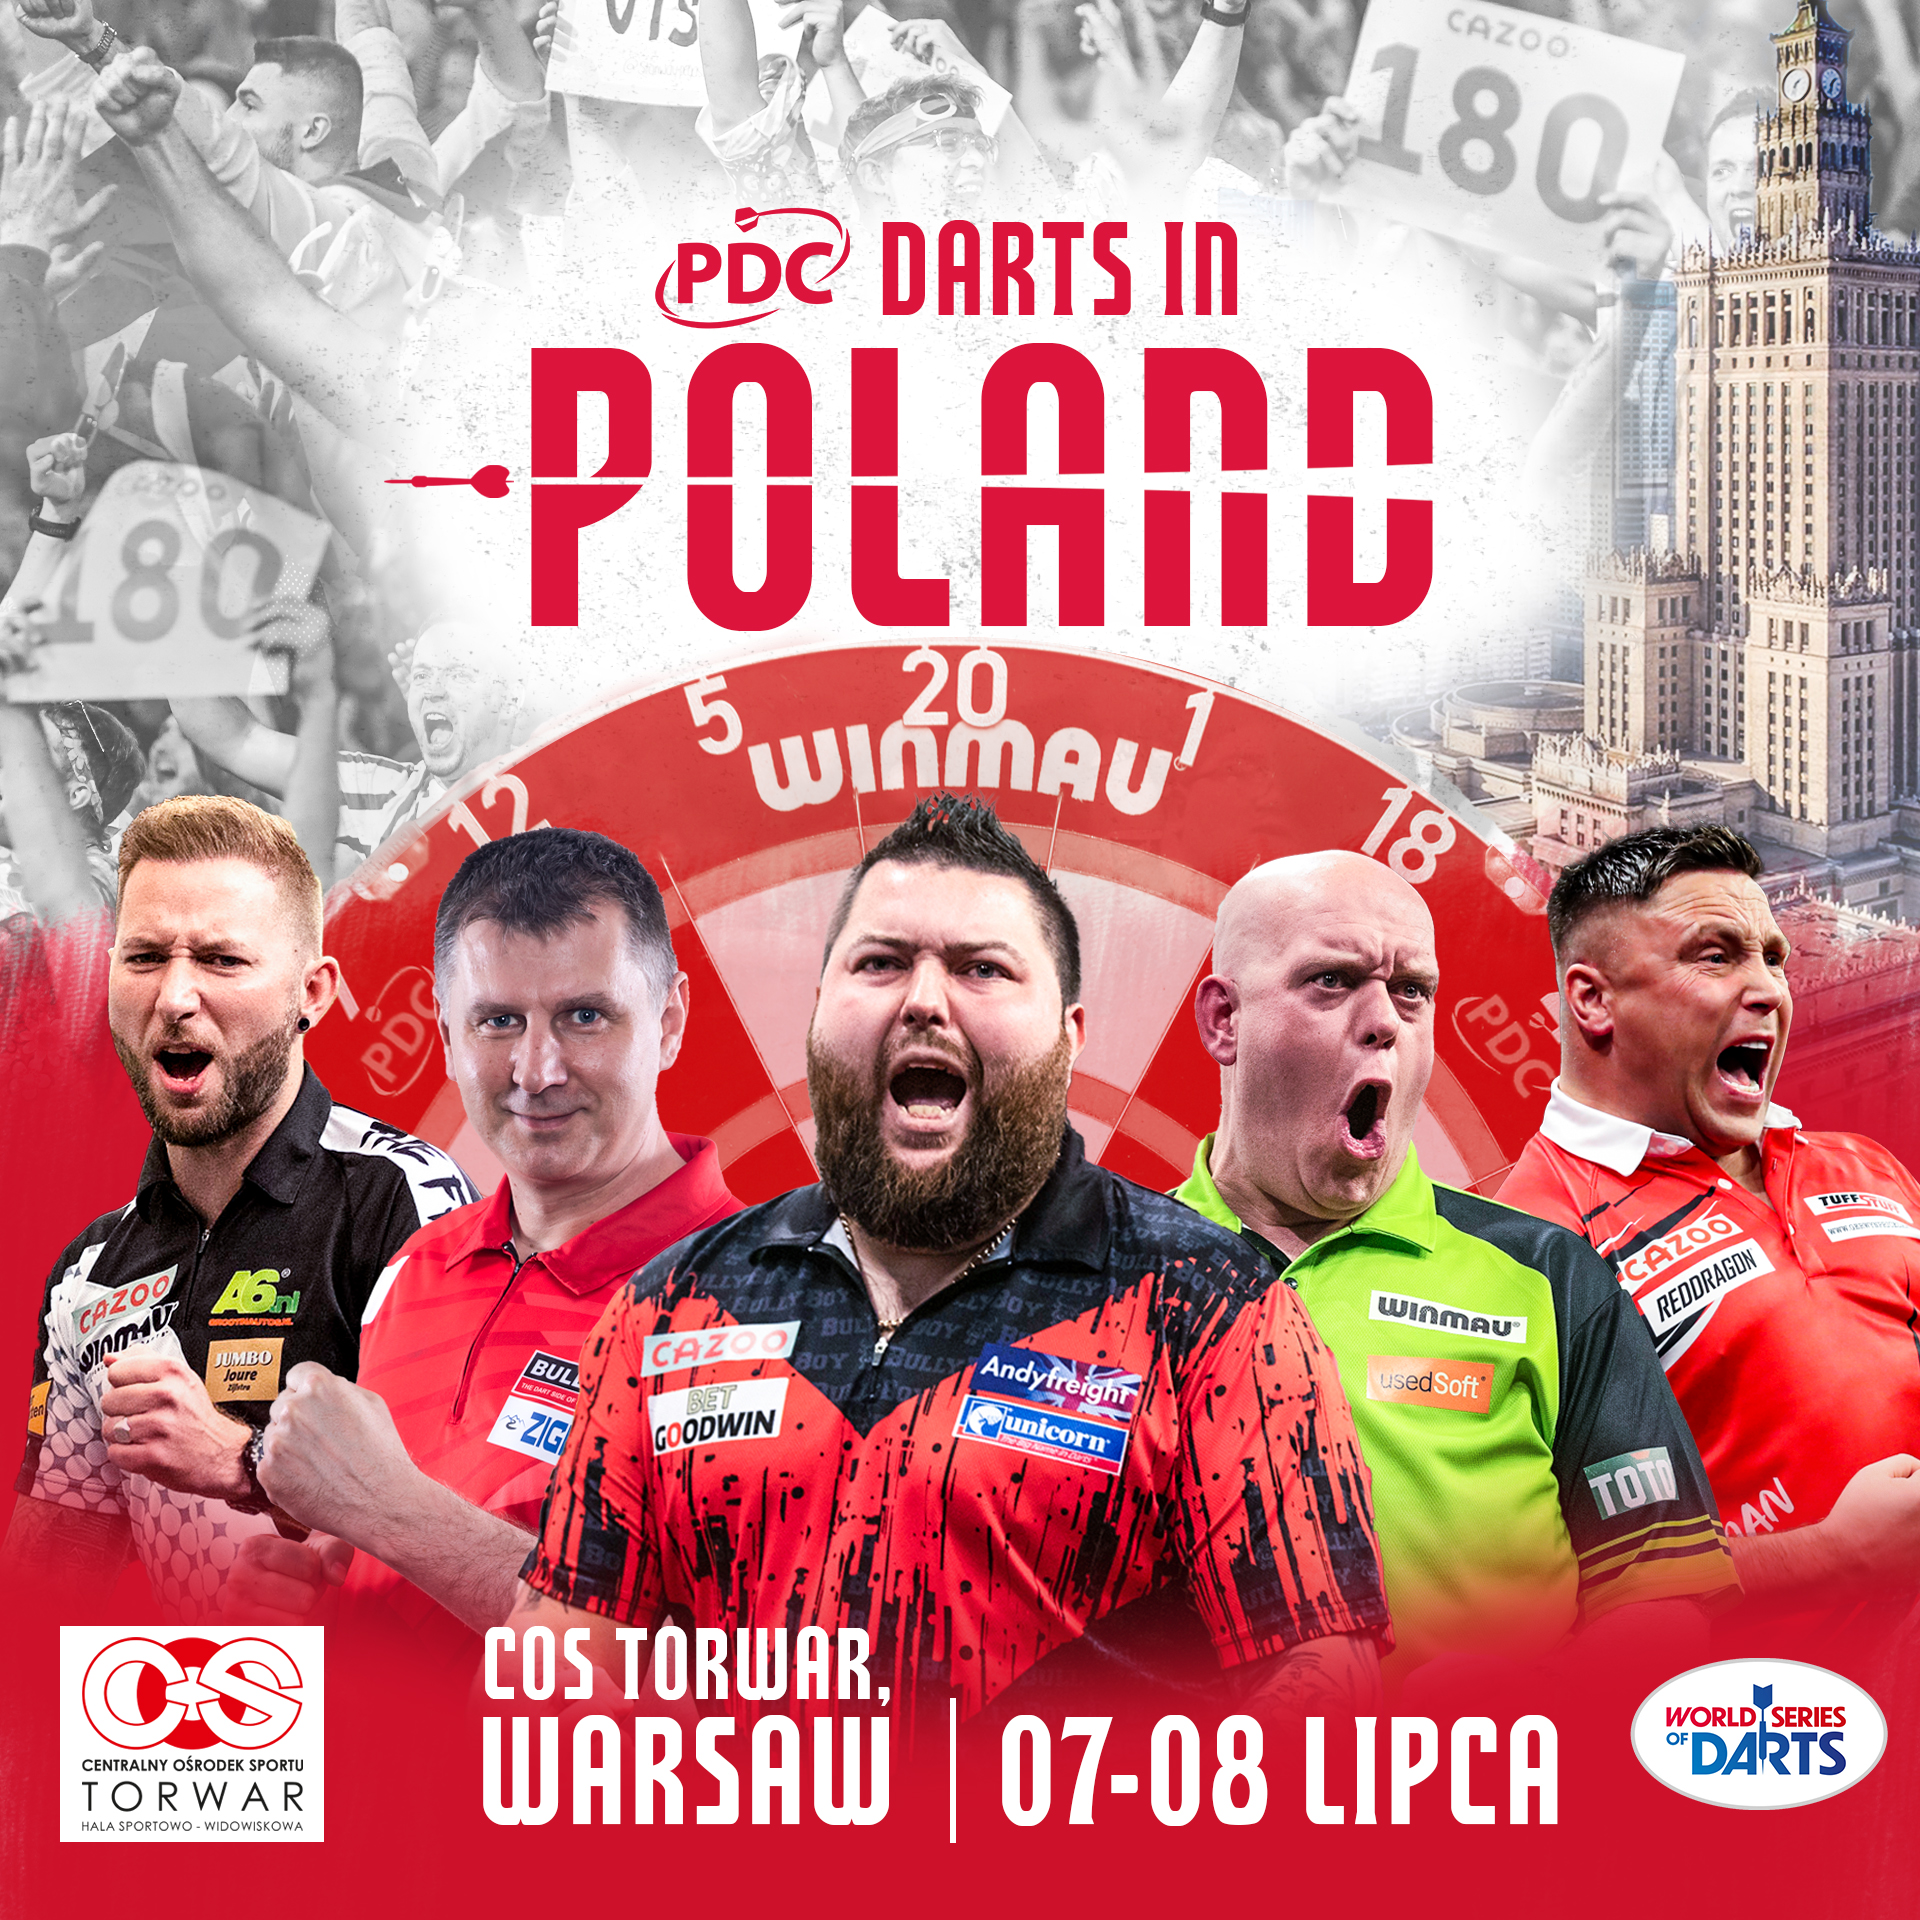 Bilety na Poland Masters wyprzedają się w ciągu jednego dnia, ponieważ ekspansja europejska przyspiesza